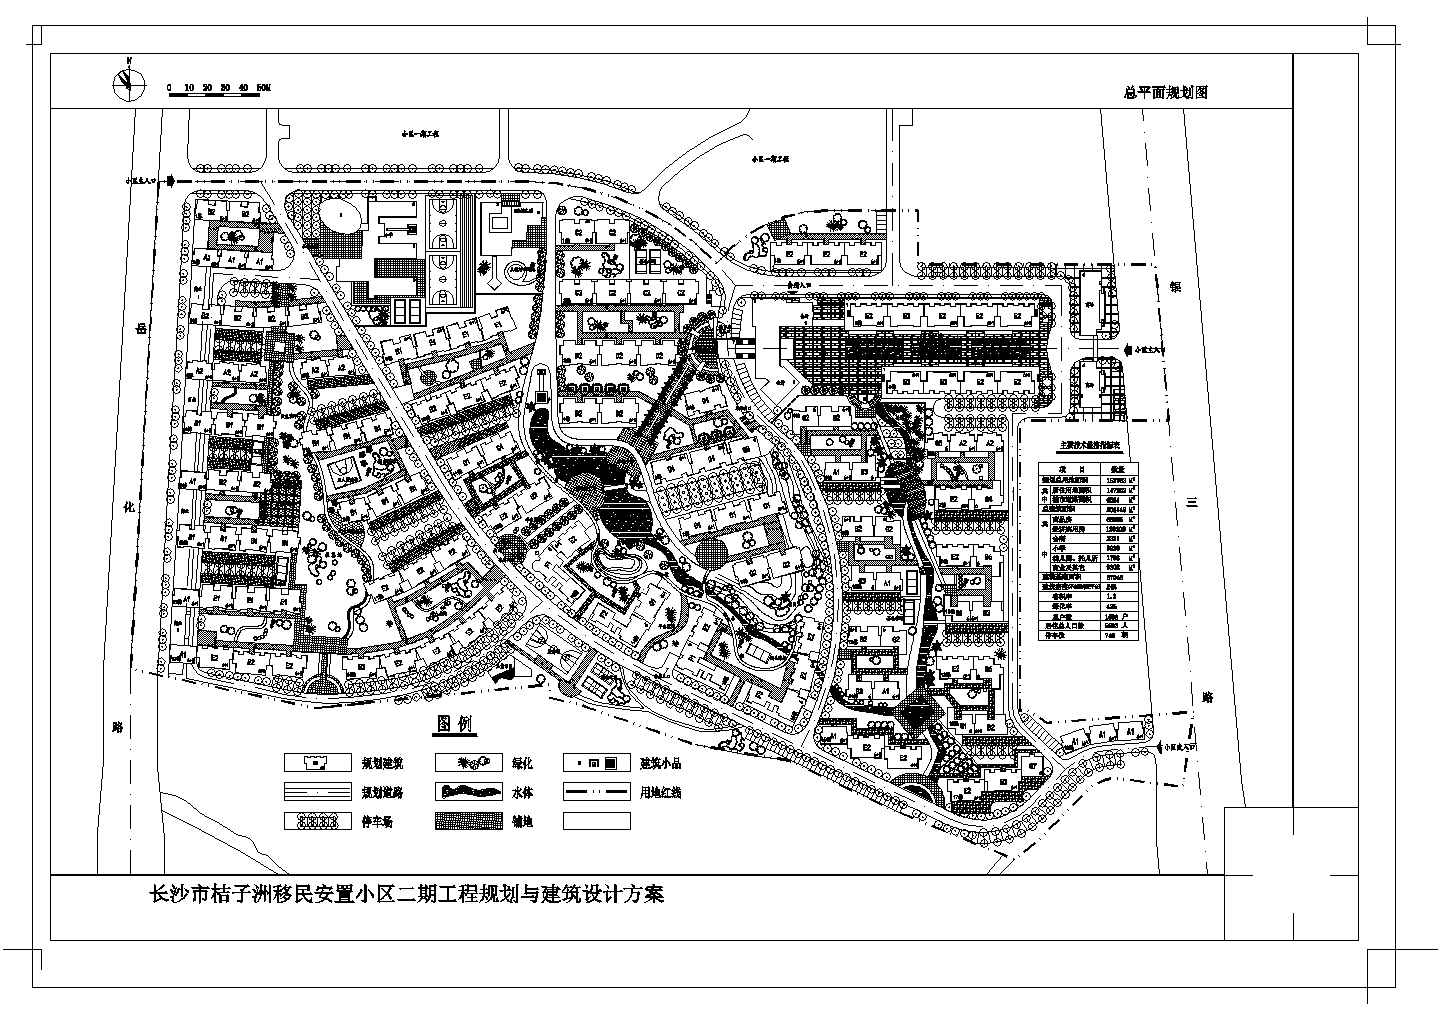 规划总用地153763平米总户数1598户移民安置小区二期工程规划总平面规划图cad图纸